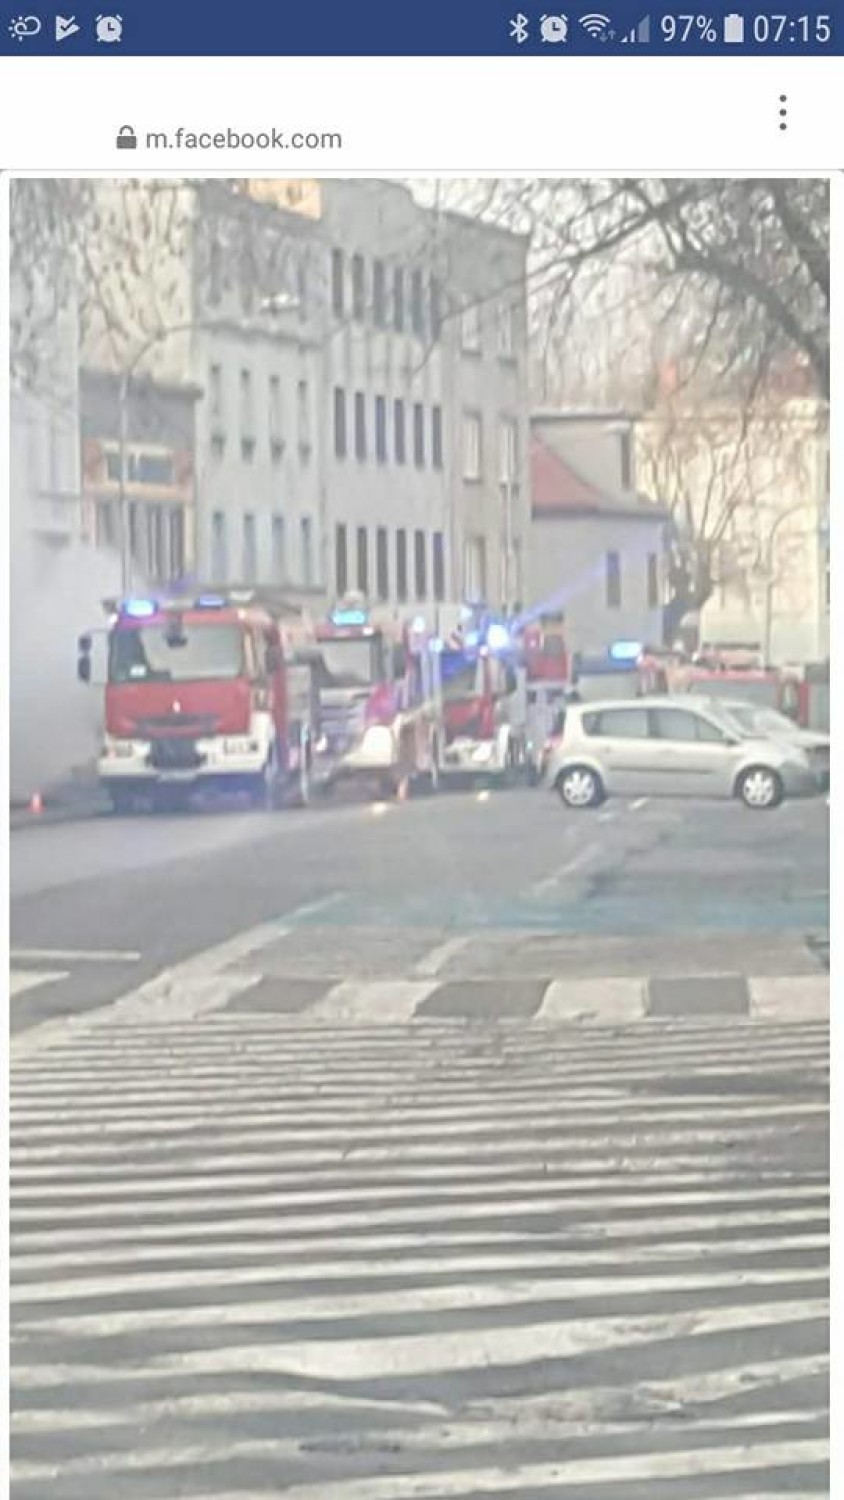 Wodzisław Śląski: Trwa pożar kamienicy na ul. Kubsza - na miejscu strażacy i policja 